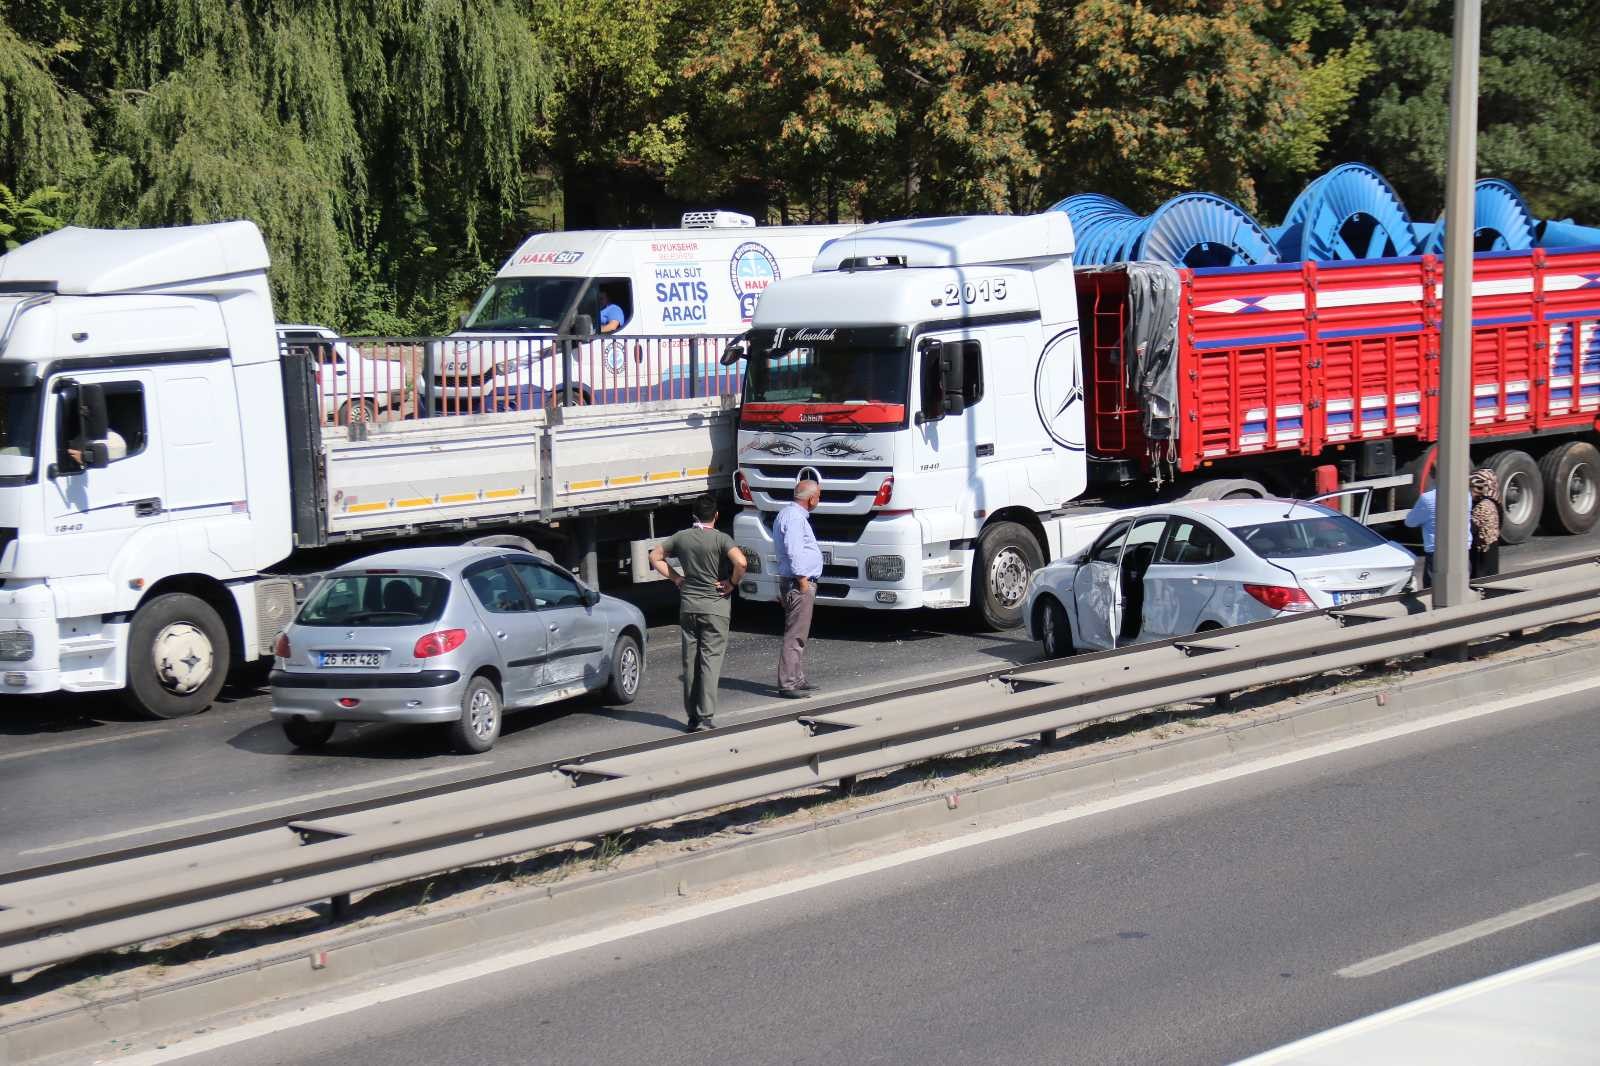 Eskişehir’de TIR ve 2 otomobil çarpıştı #eskisehir